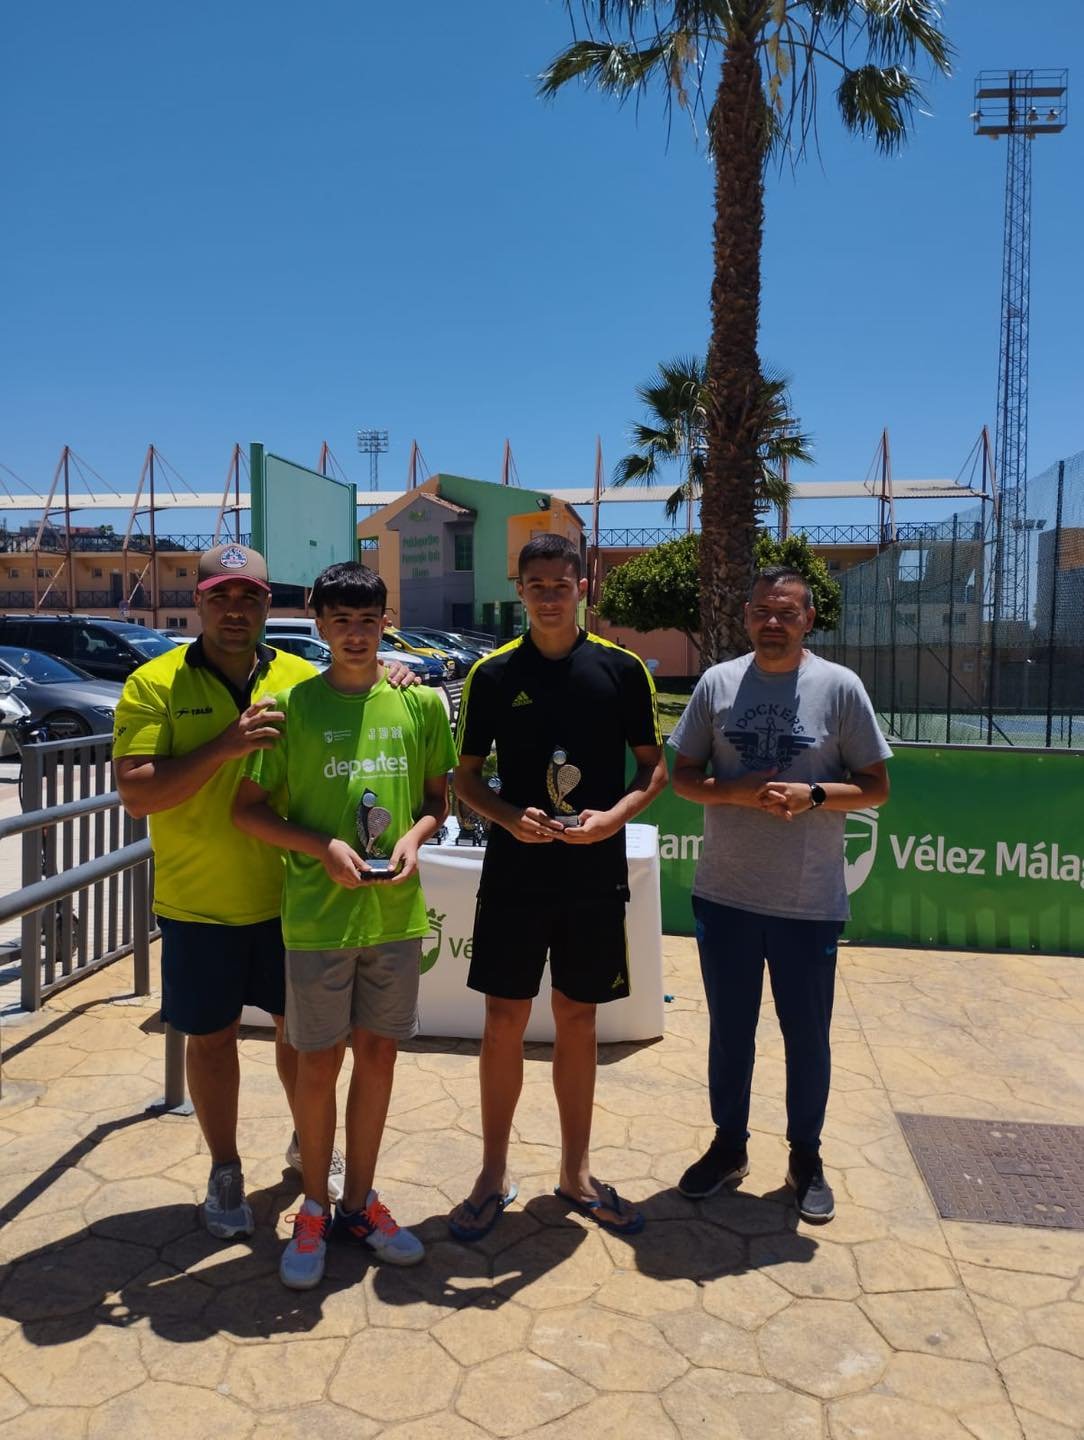 Vélez-Málaga acoge sus finales locales de tenis y pádel « Euro Weekly News